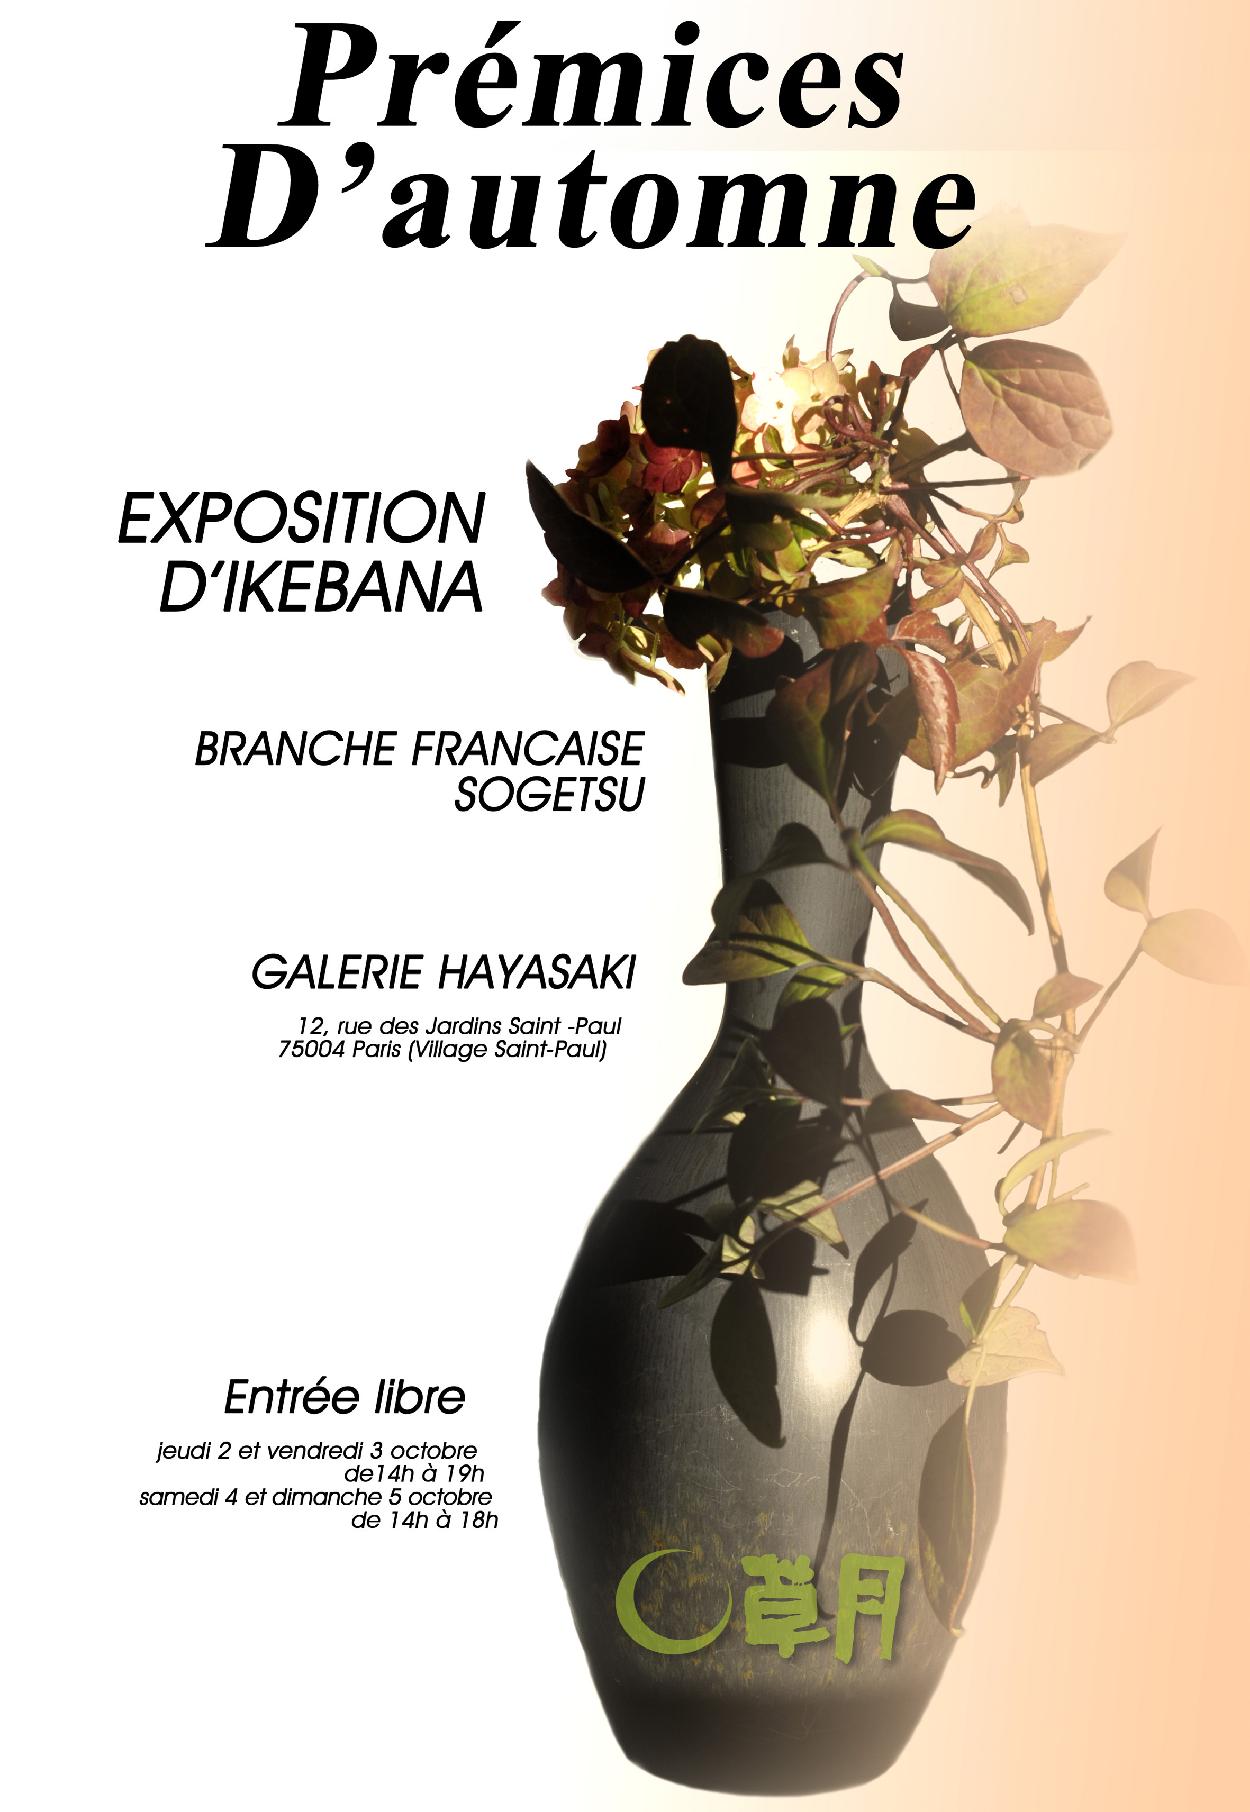 Branche Française Sogetsu, Prémices d'automnes, 2 october - 5 october 2014